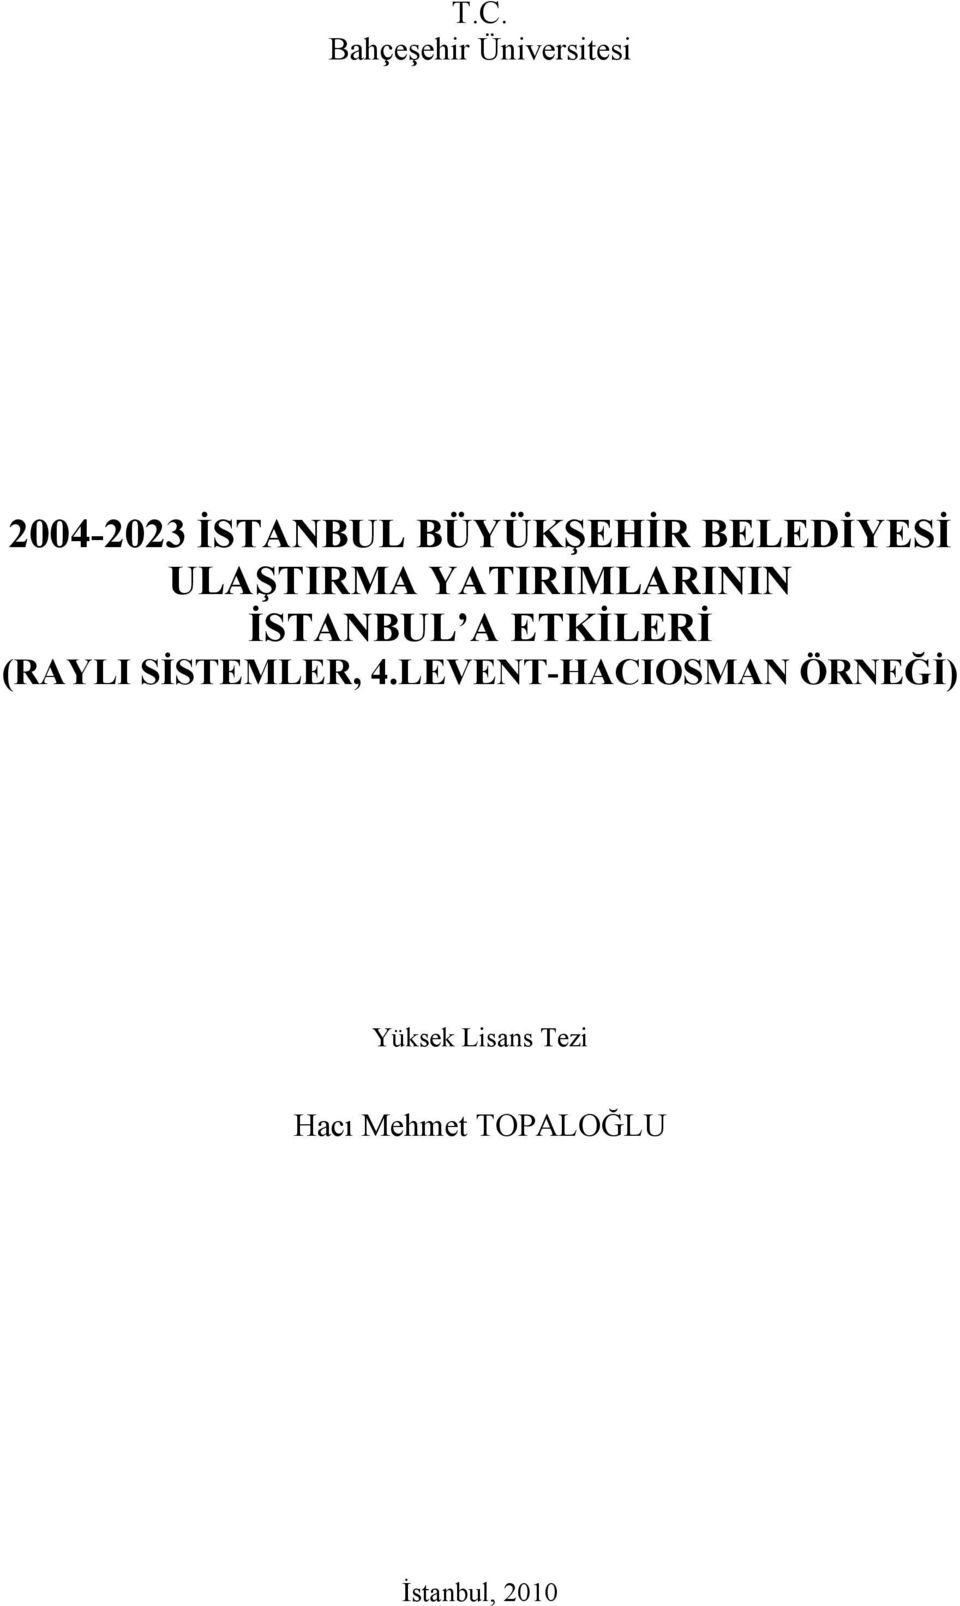 İSTANBUL A ETKİLERİ (RAYLI SİSTEMLER, 4.